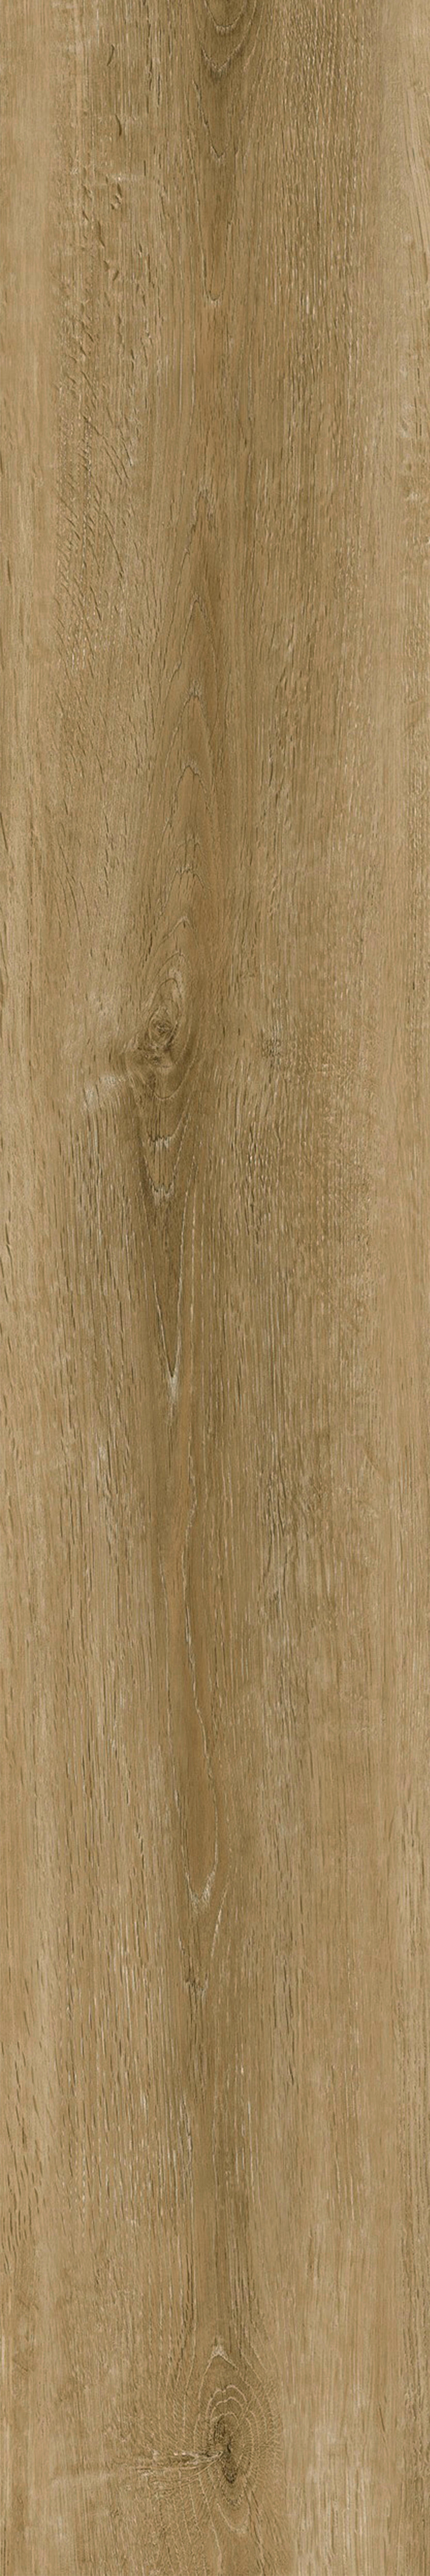 Vinylplanke Eiche B/L: ca. 15,24x91,44 cm Vinyl-Planke SK Nature Oak - Eiche/natur (15,24/91,44cm)